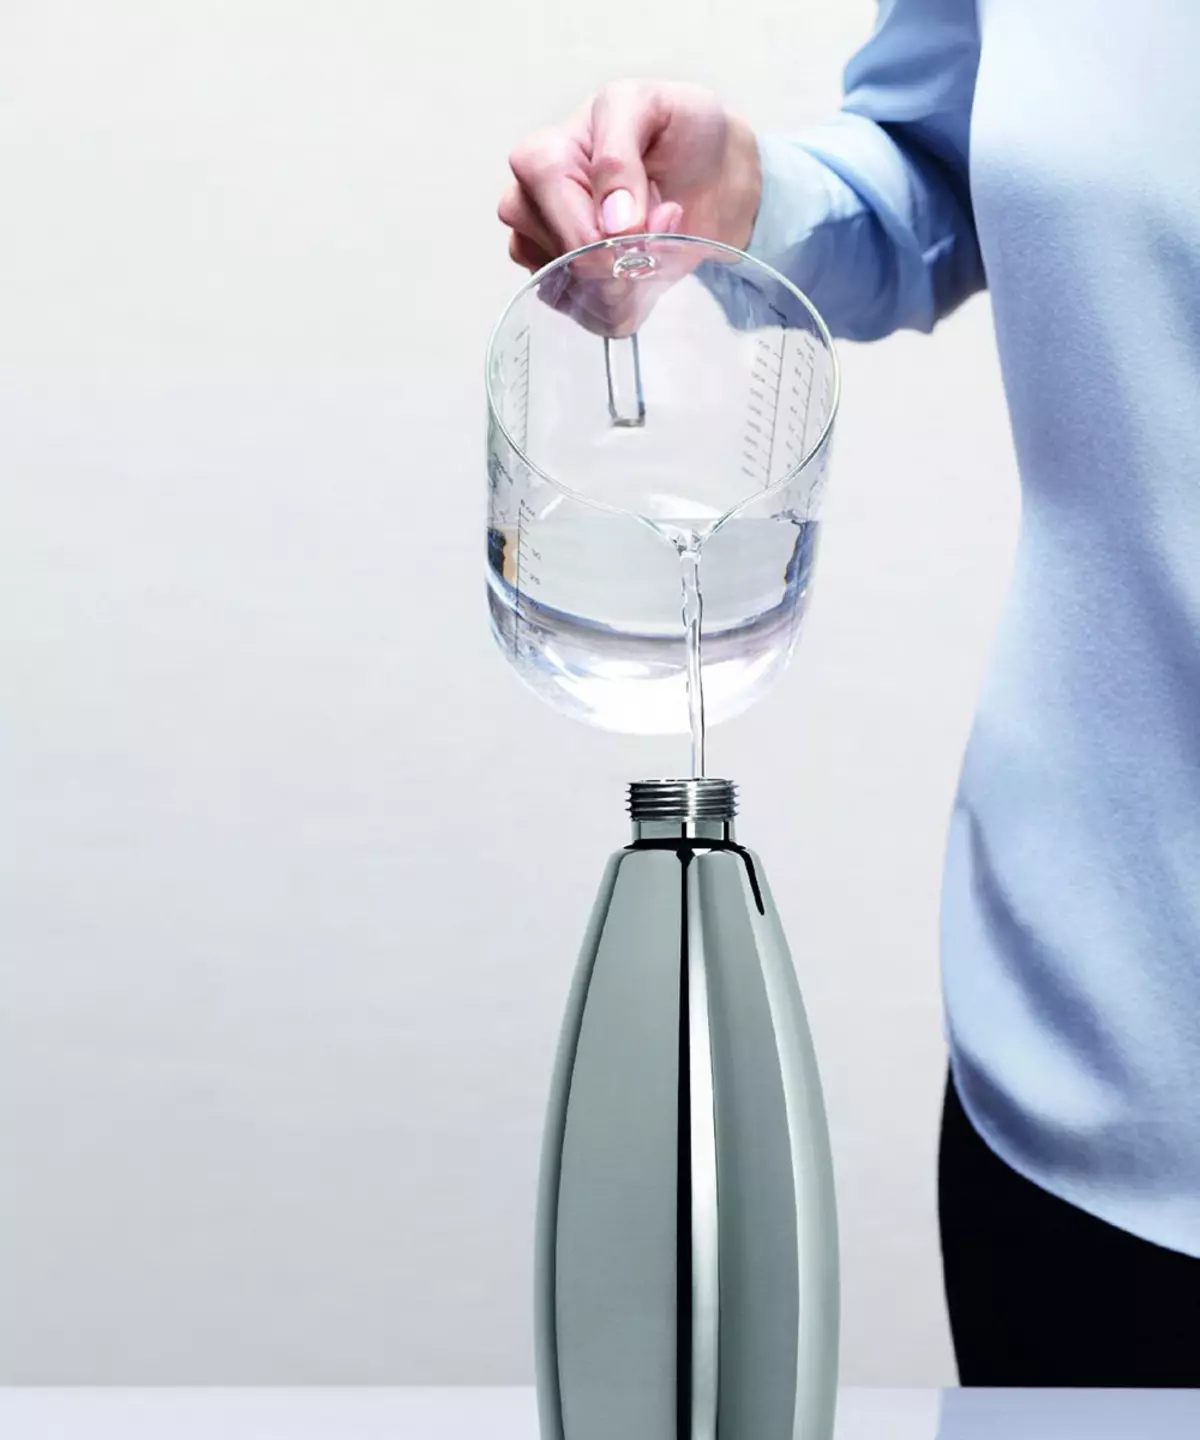 Siphon עבור מים אכפתיות (33 תמונות): כיצד להשתמש במכשיר עבור סודה בבית? איך עובד סיפון הבית להכנת משקאות מוגזים? 24967_31